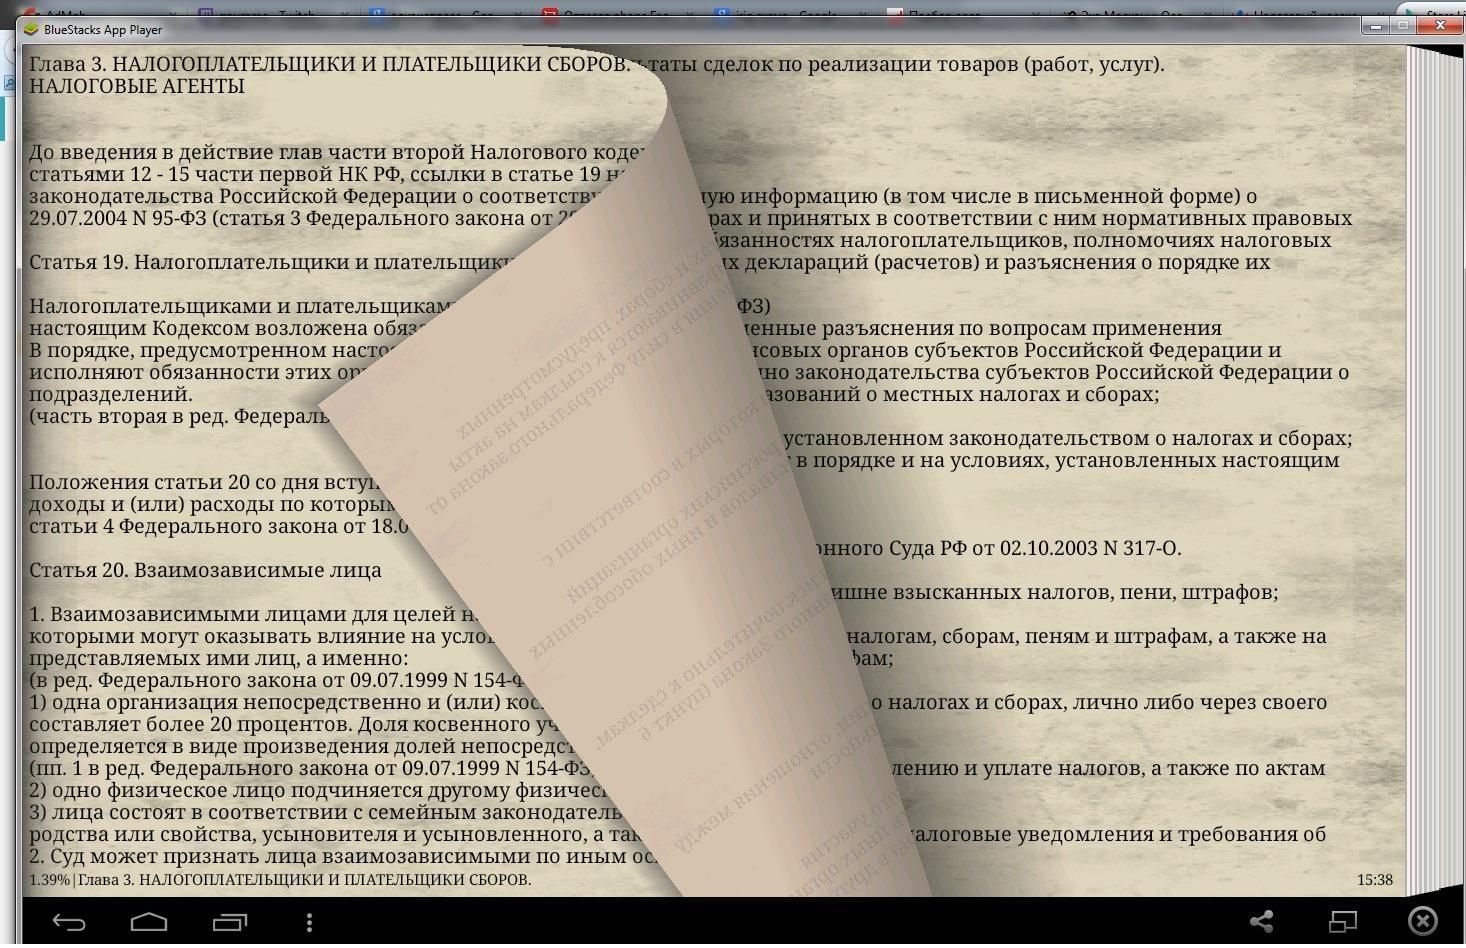 Глава 14 кодекс рф. Налоговый кодекс Молдовы. Ссылка в литературе на налоговый кодекс.